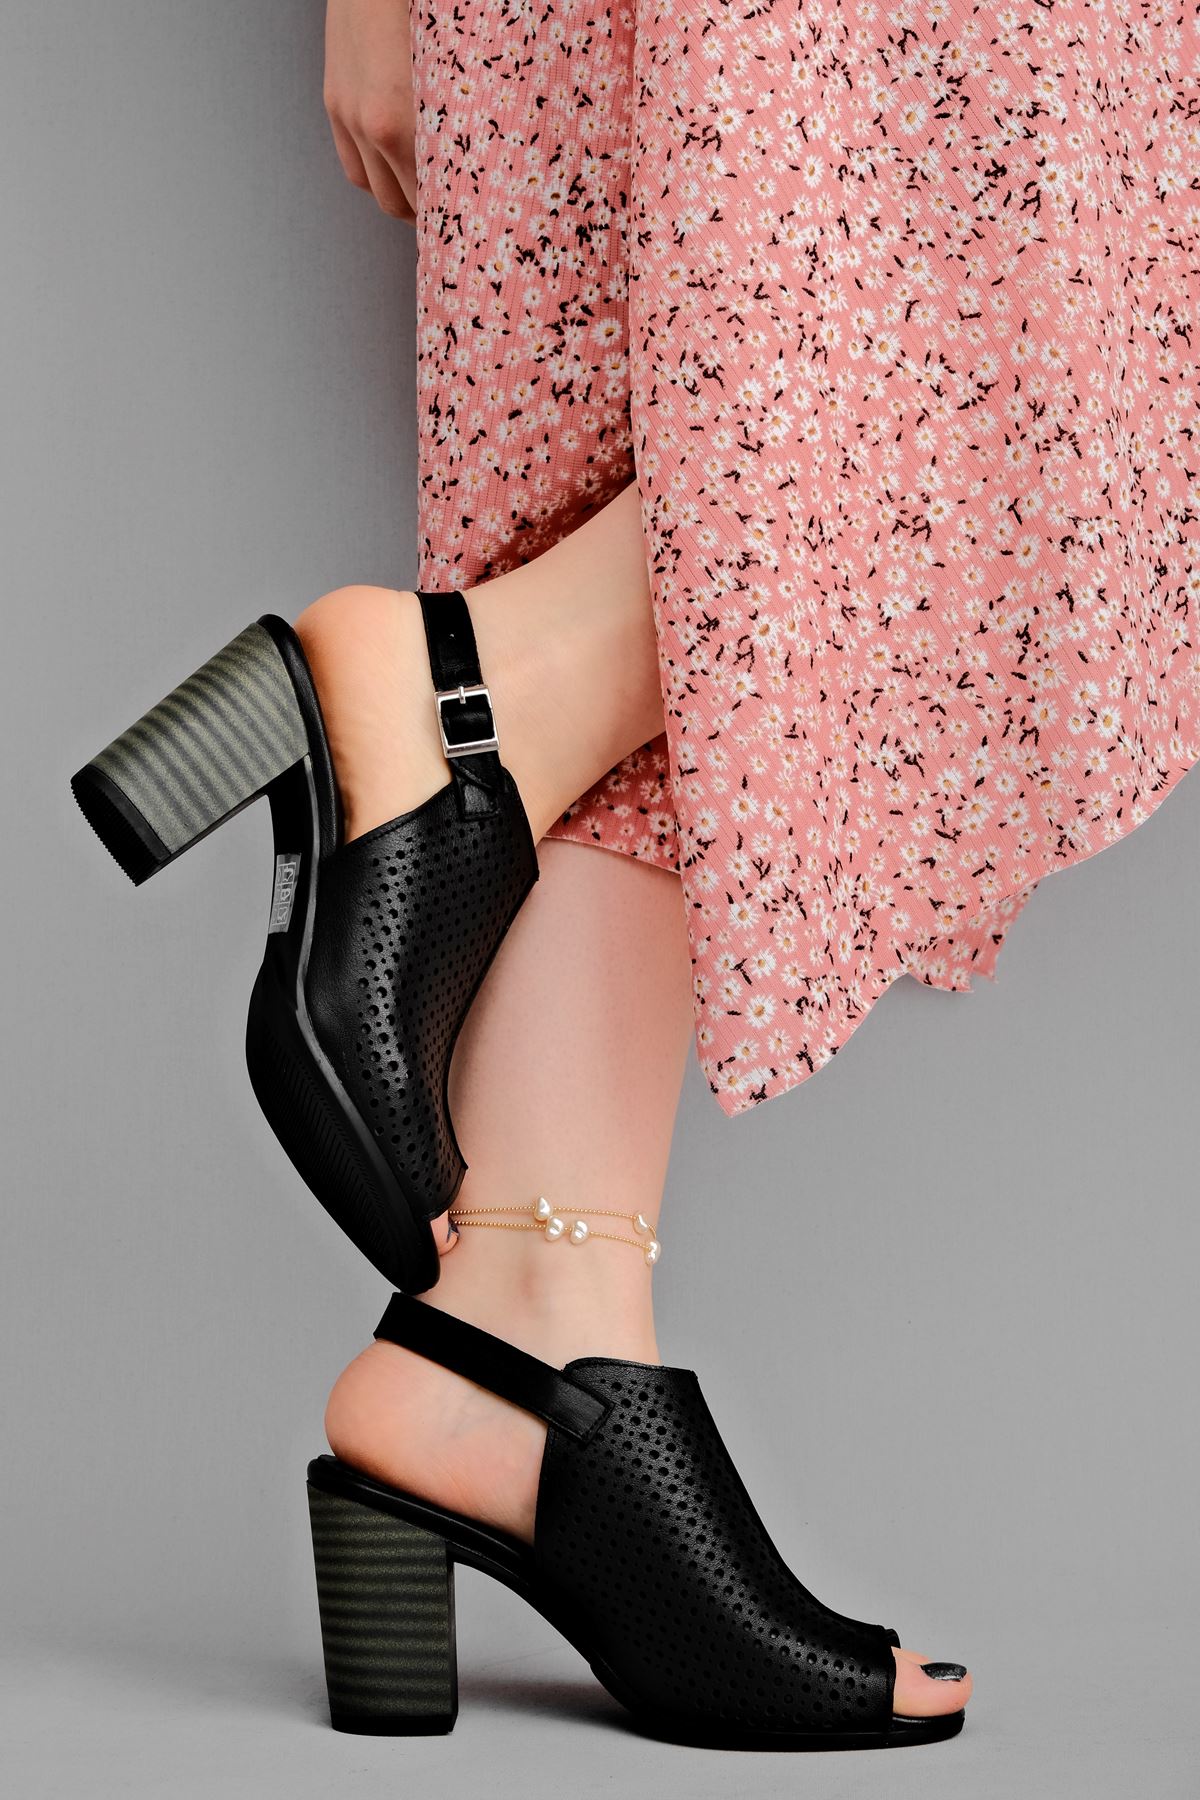 Vesta Kadın Hakiki Deri Topuklu Ayakkabı Üstü Delikli-siyah